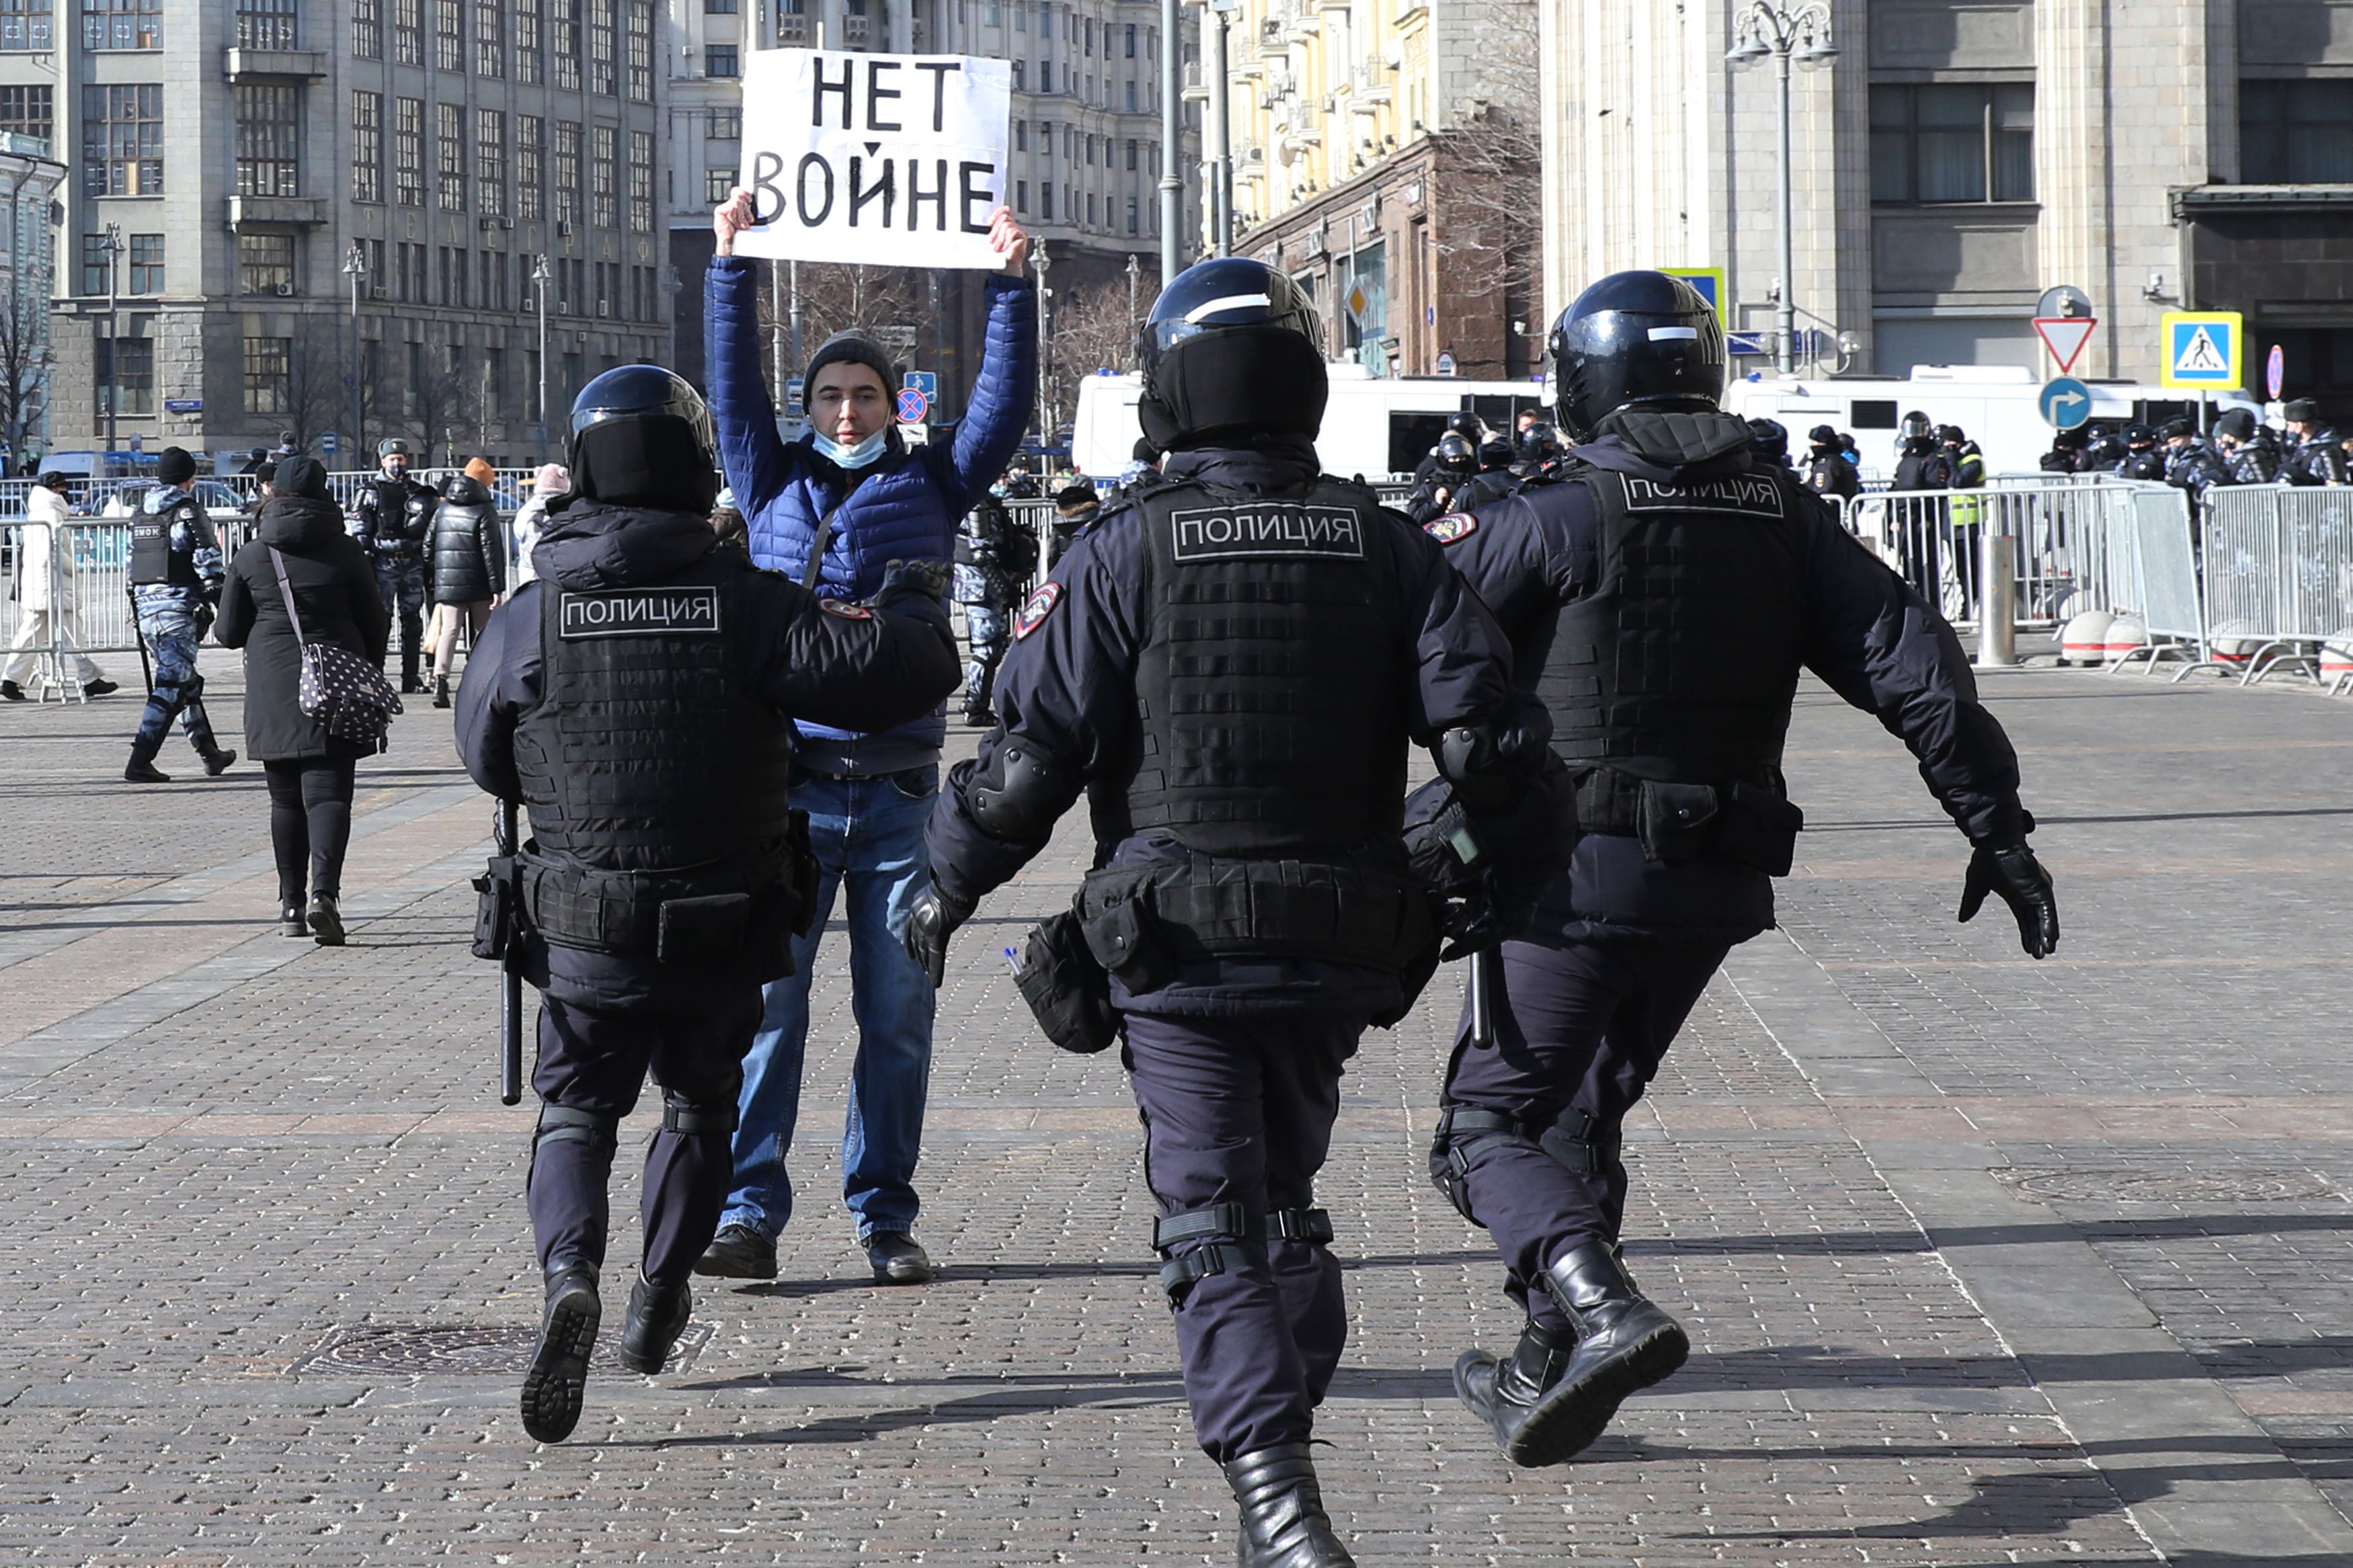 Задержание протестующего с плакатом "Нет войне" во время несанкционированного пикета на Манежной площади в Москве 13 марта 2022 г. 